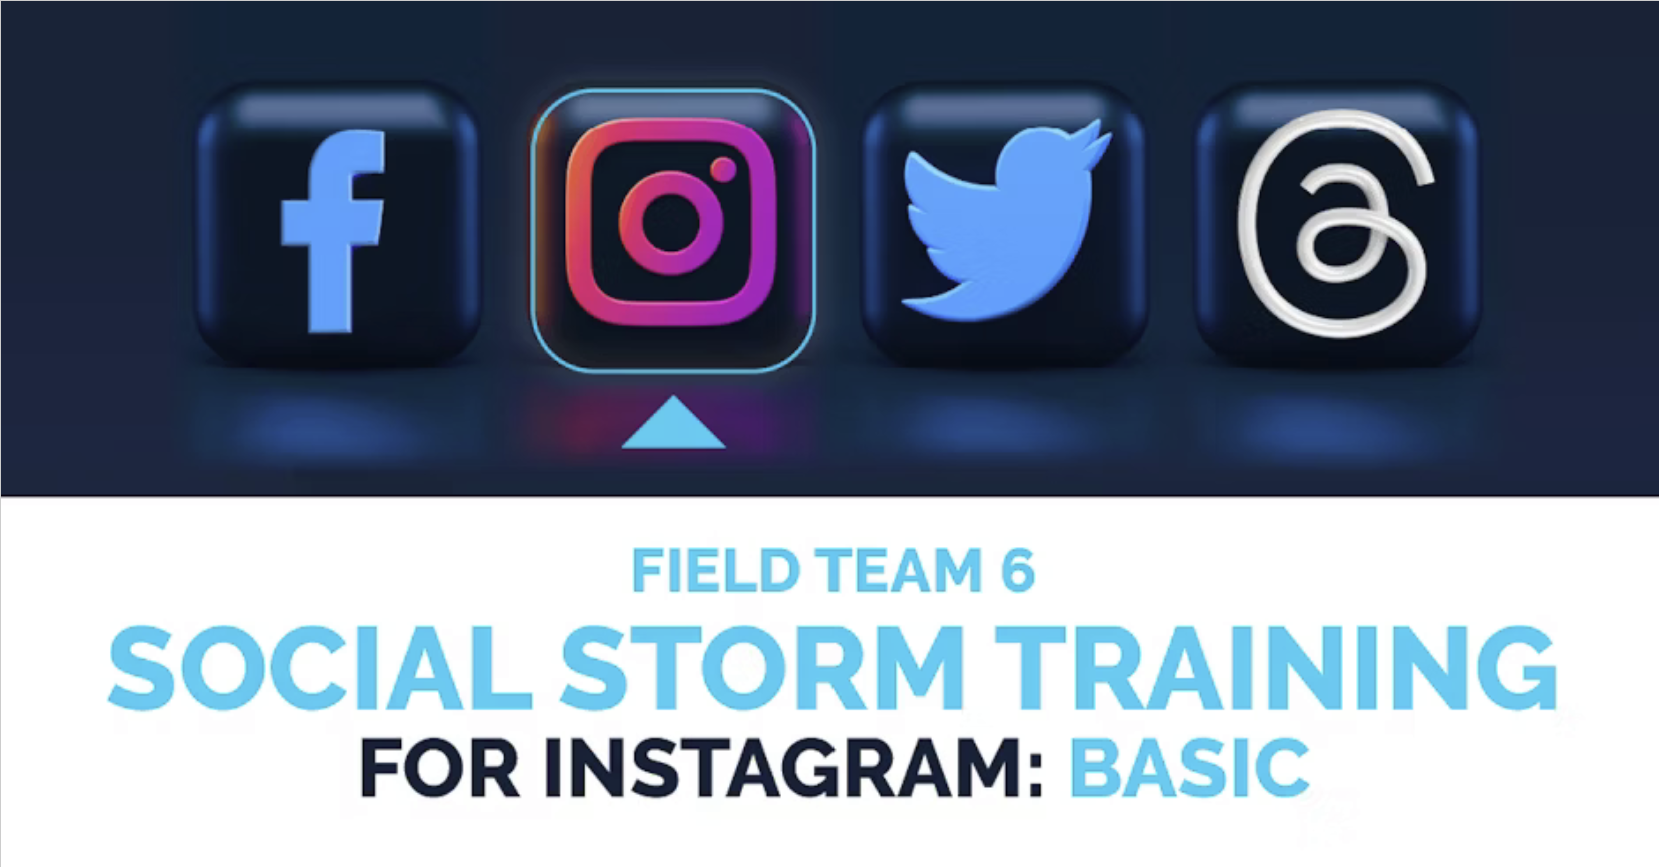 Field Team 6 Social Storm Training for Instagram: Basic